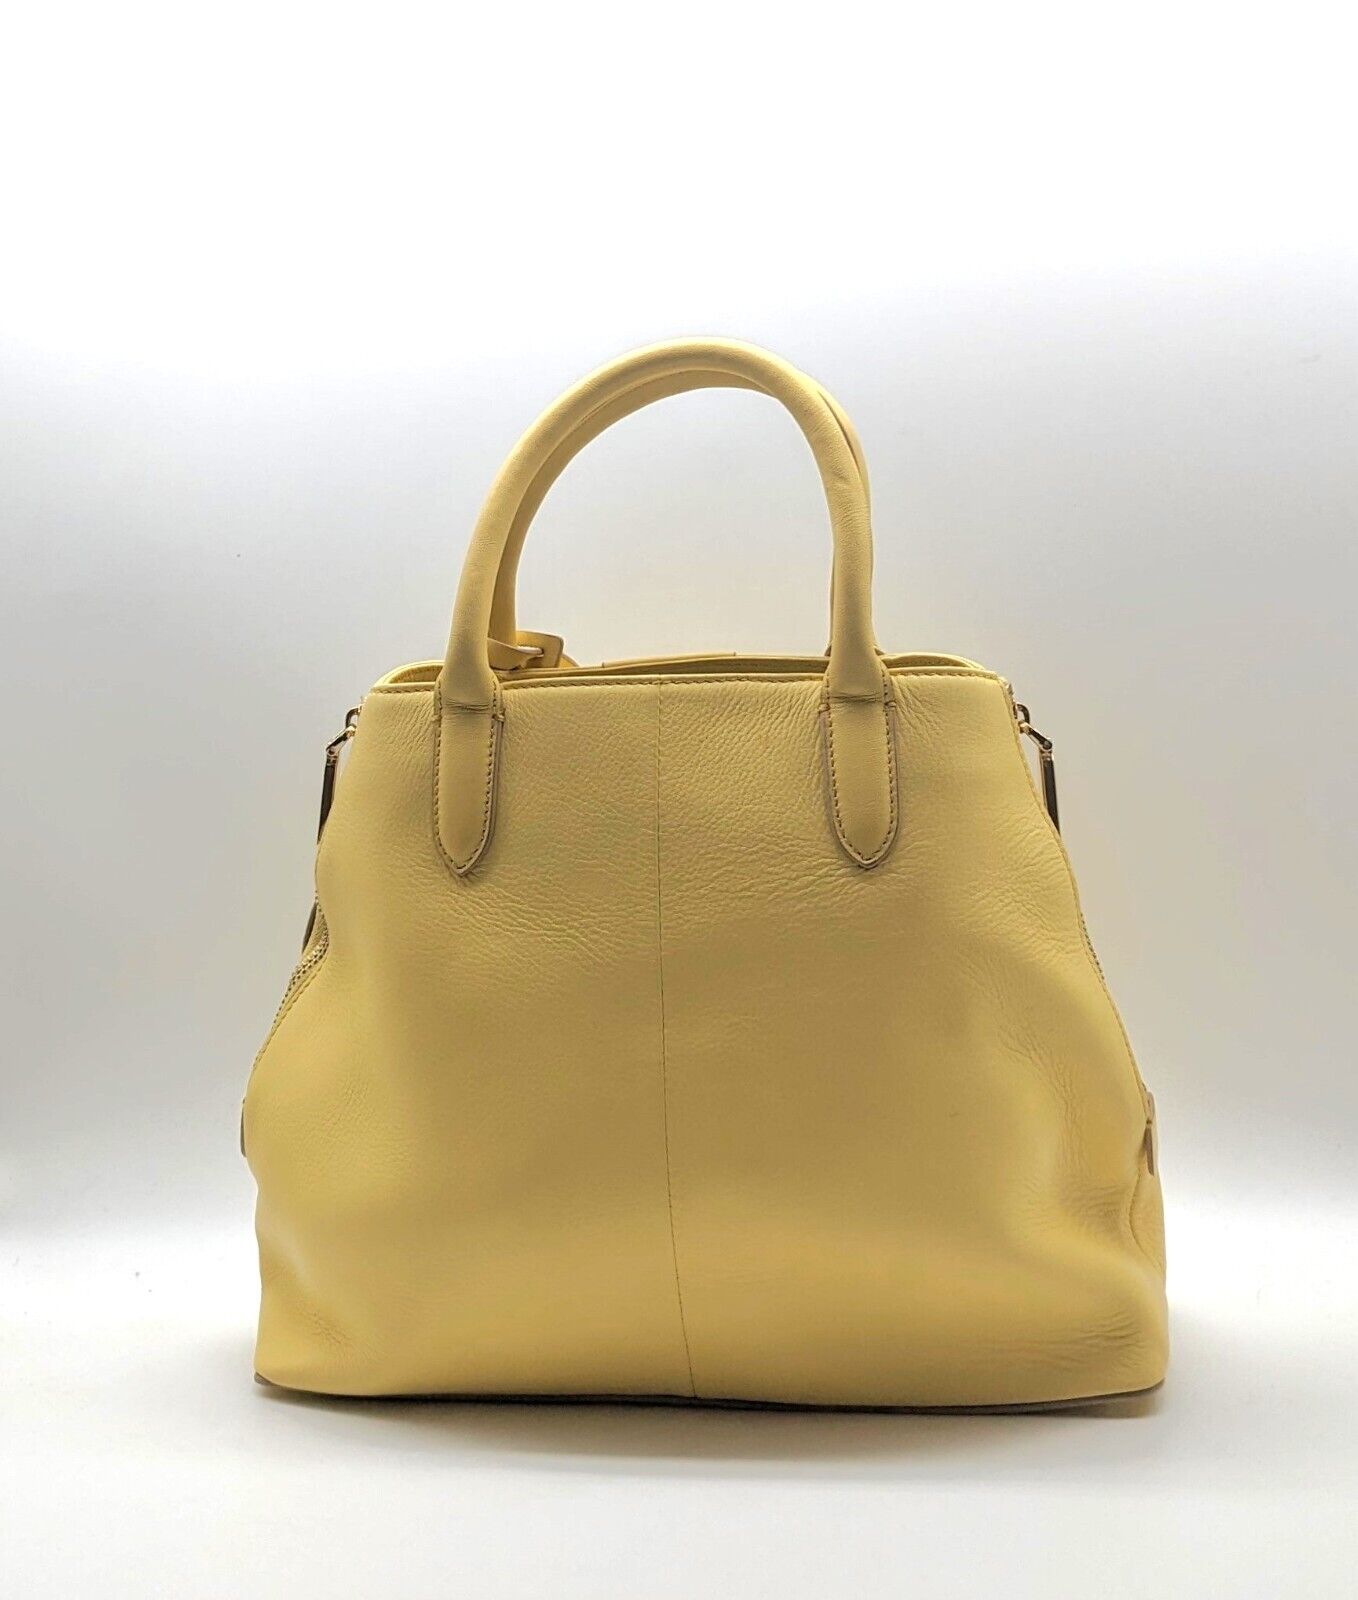 Modalu Harris Camomile Yellow Leather Tote Bag RRP £189